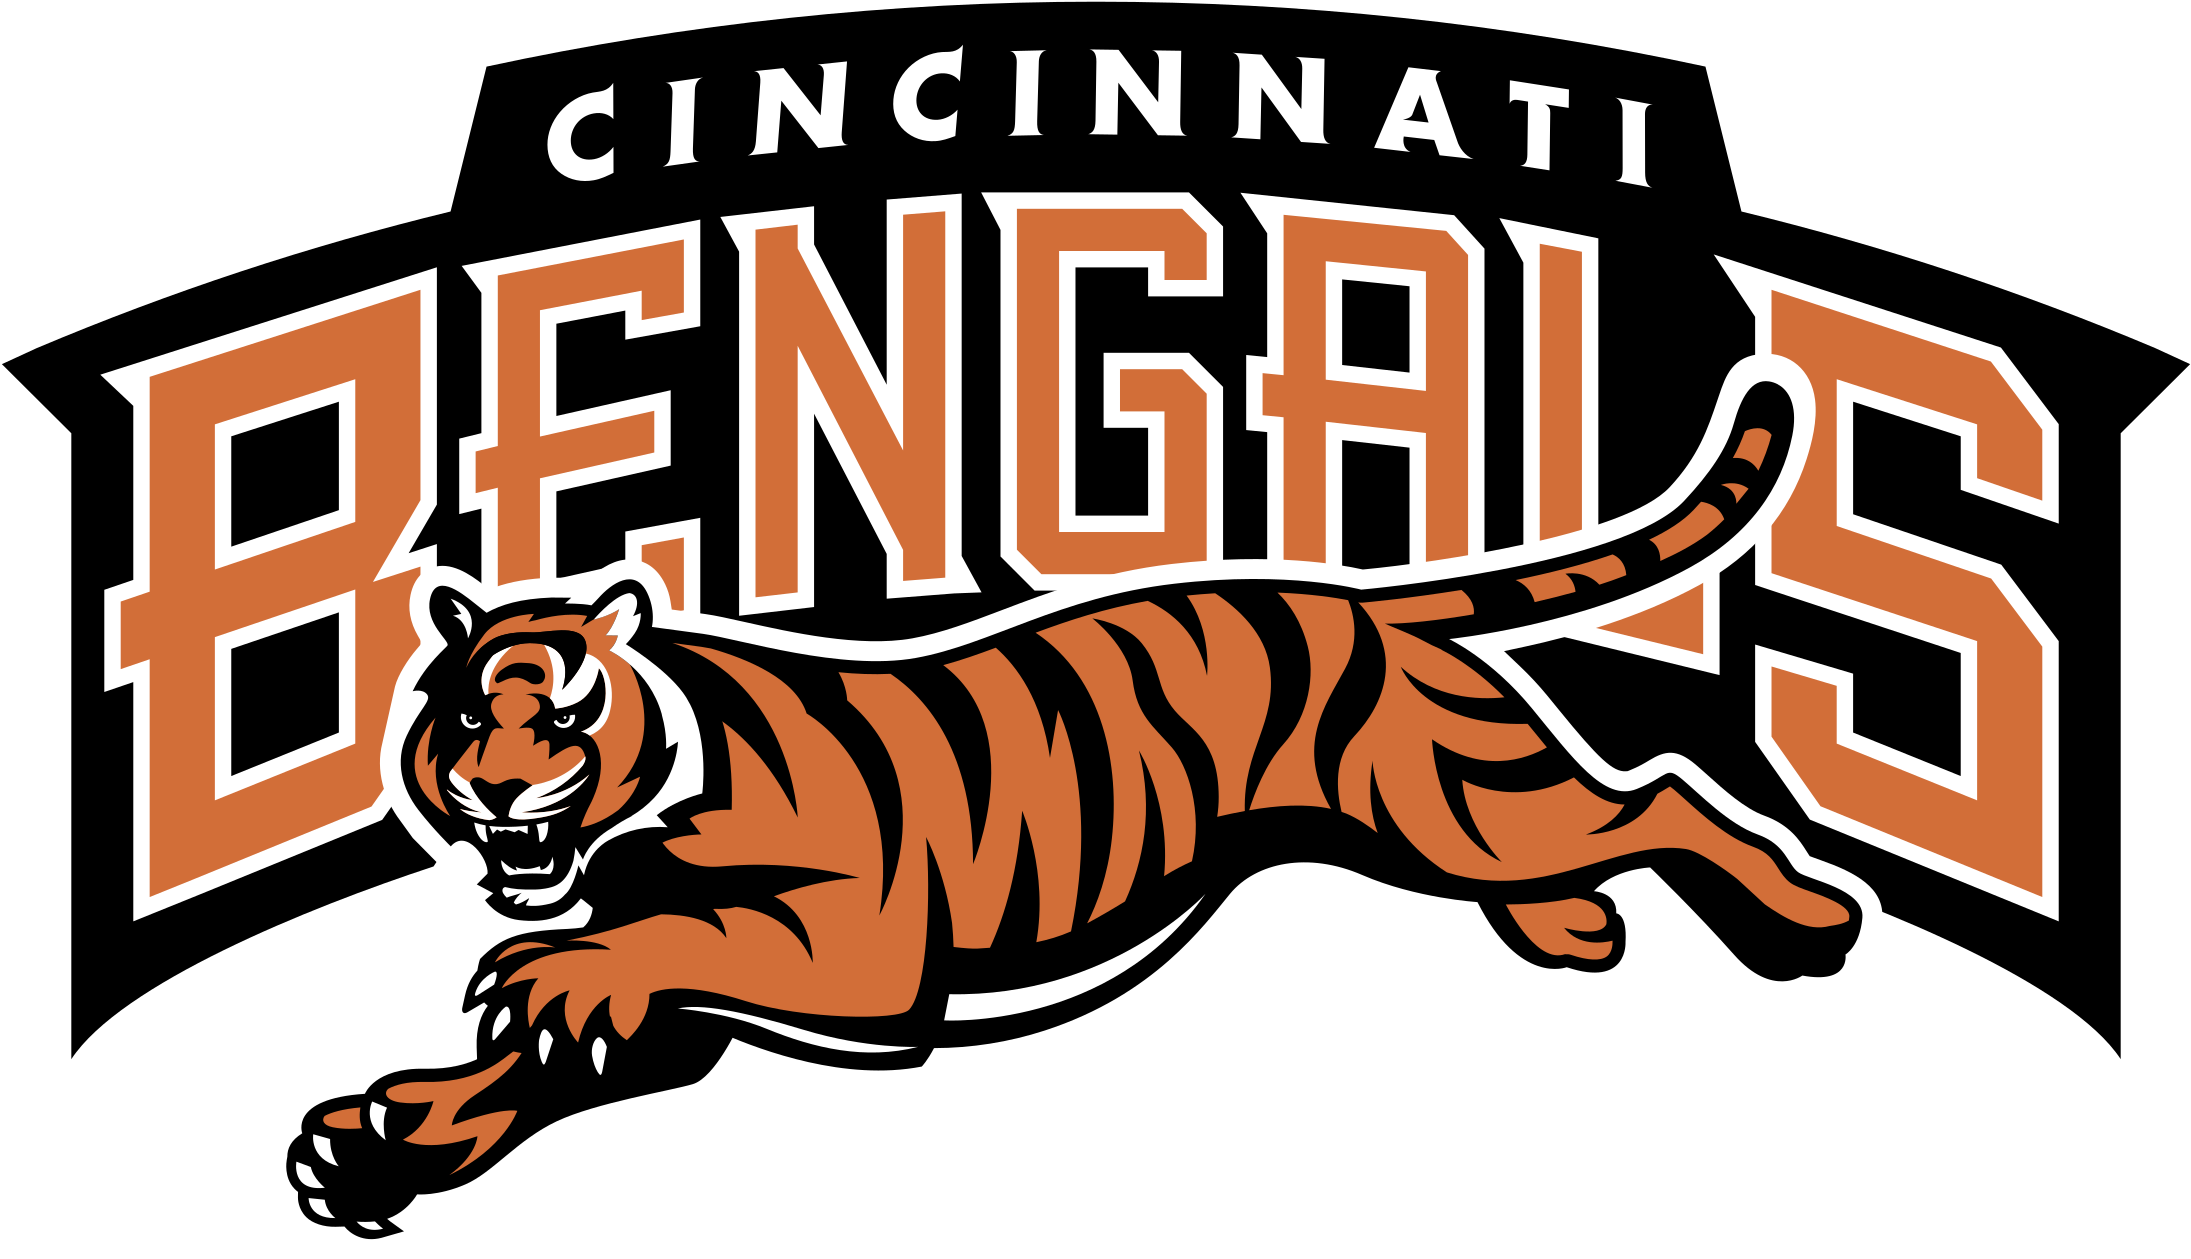 Cinncinati Bengals Logo Png Transparent Cincinnati Bengals Logo 2016